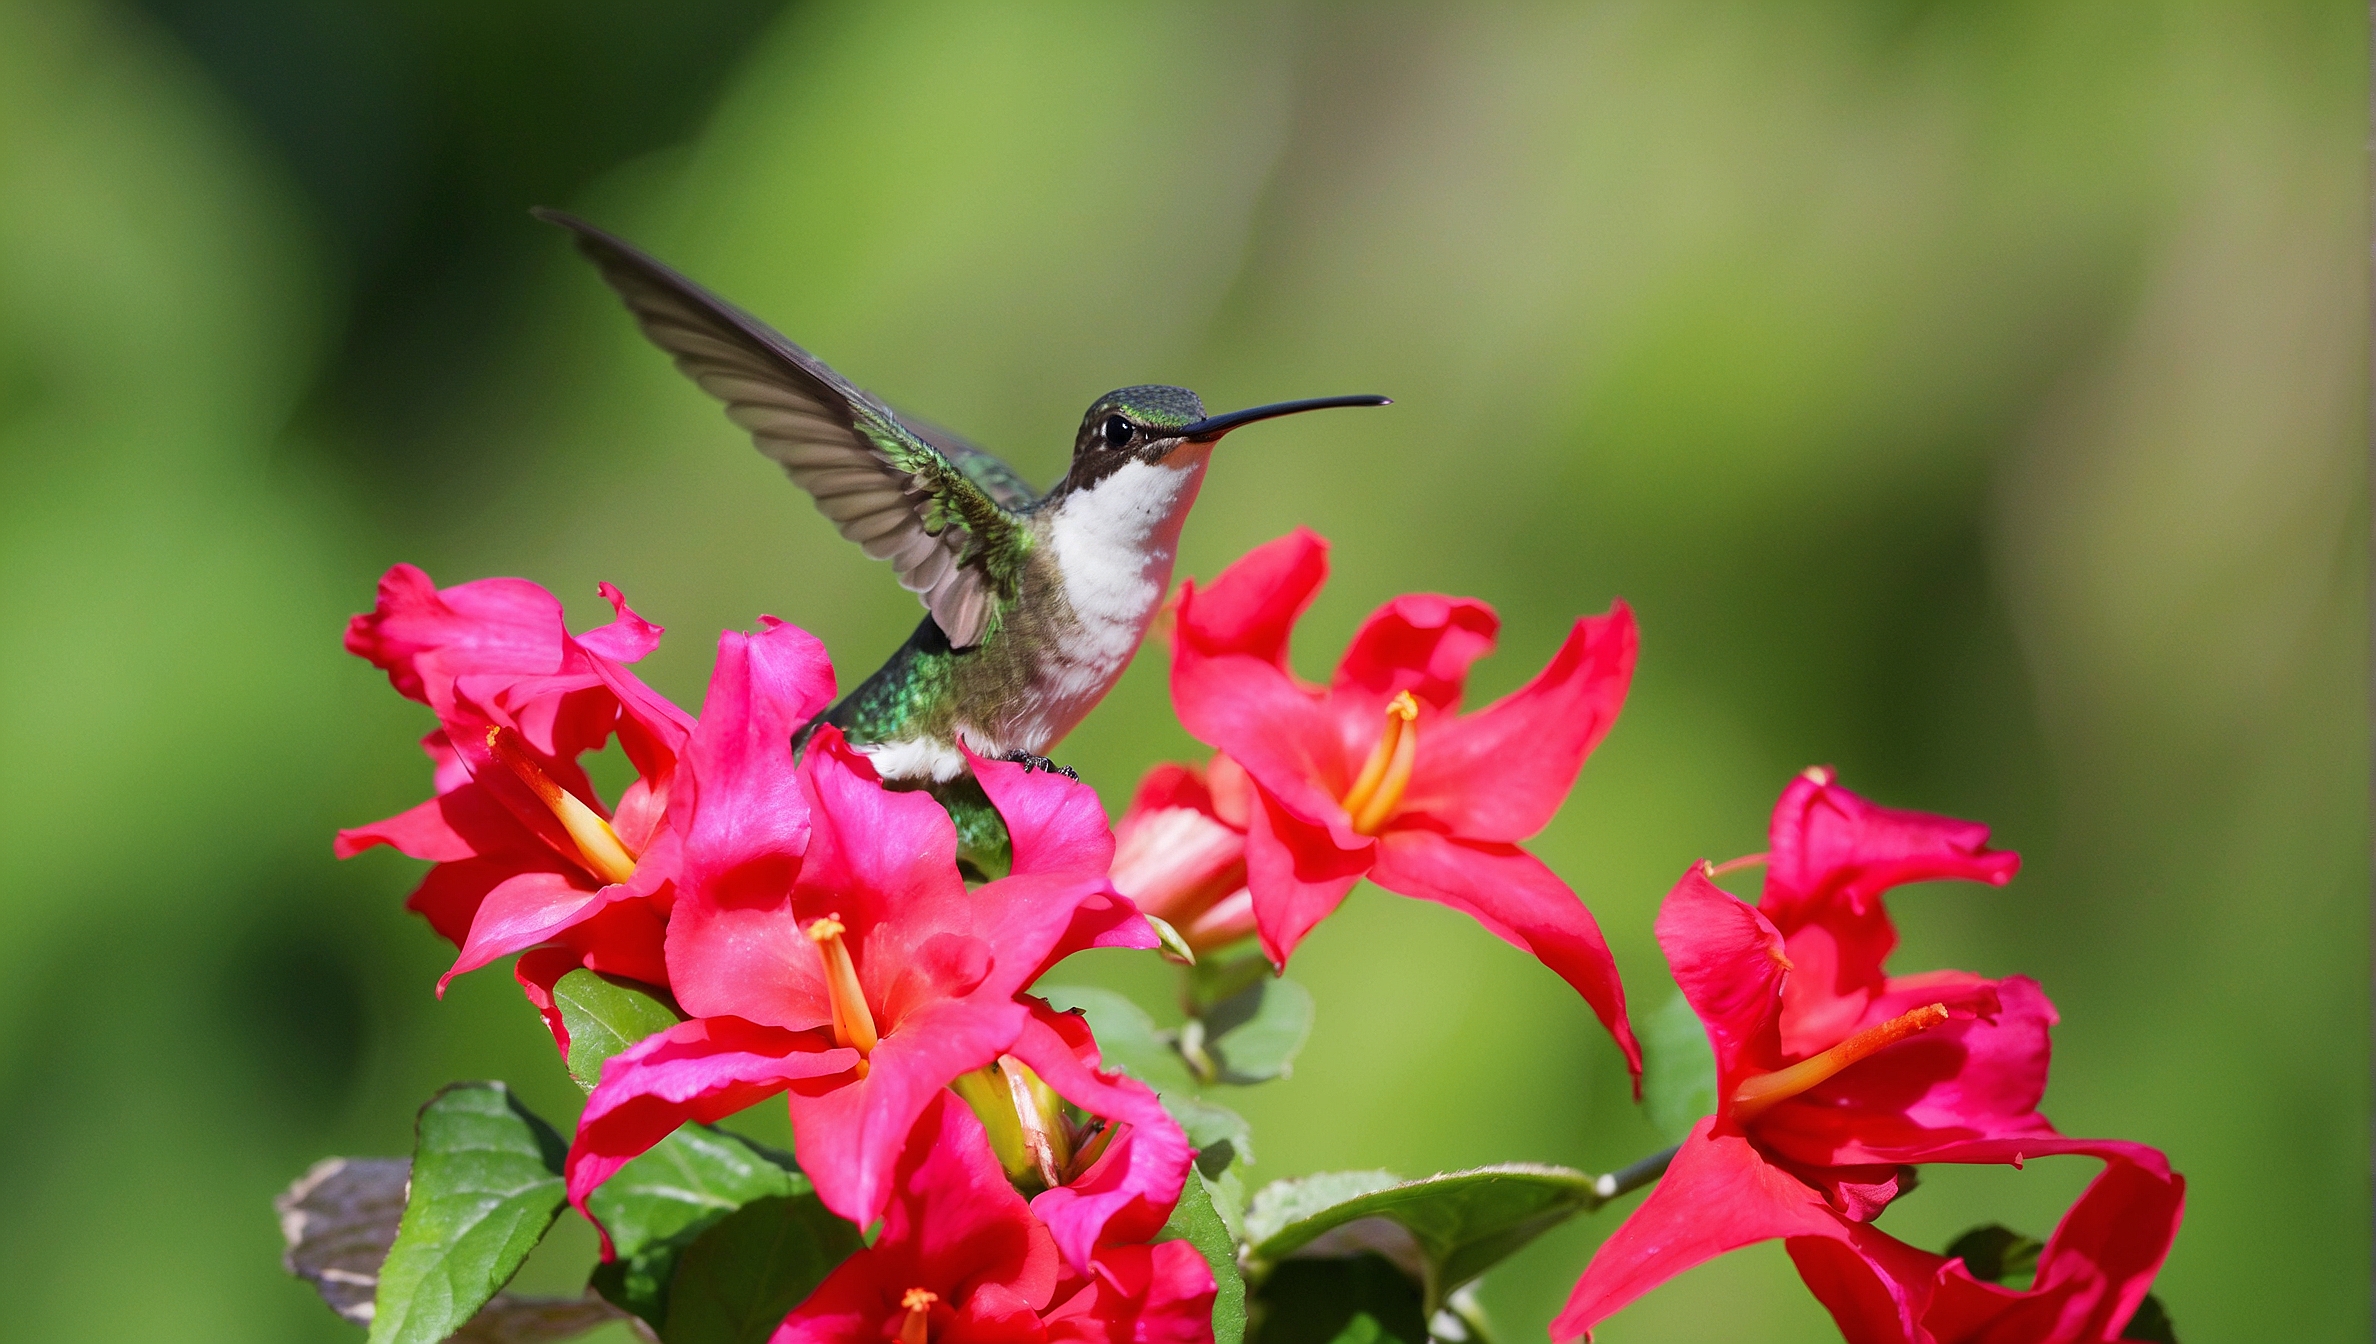 Do Hummingbirds Have Any Predators?